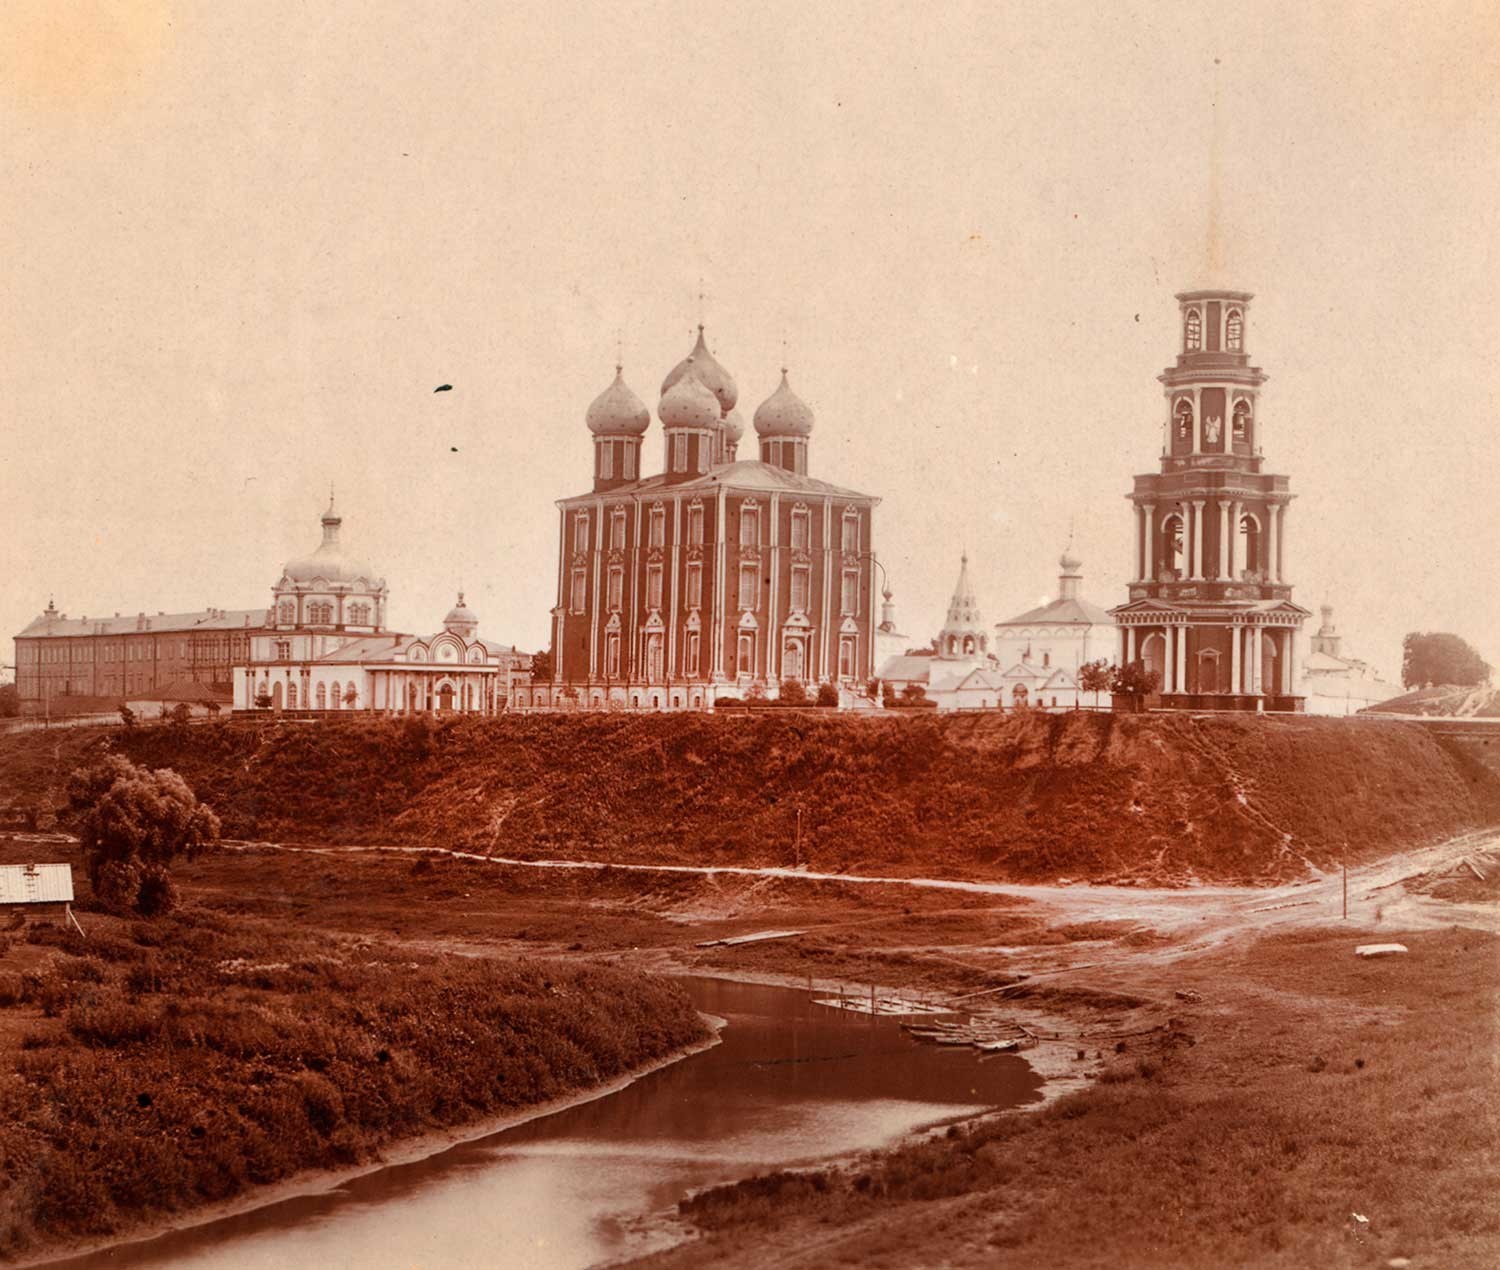 Kremlin de Riazán, vista noroeste. Desde la izquierda: Palacio Arzobispal, Catedral de la Natividad de Cristo, Catedral de la Dormición, Iglesia de la Epifanía, campanario de la Catedral de la Transfiguración. Verano de 1912.